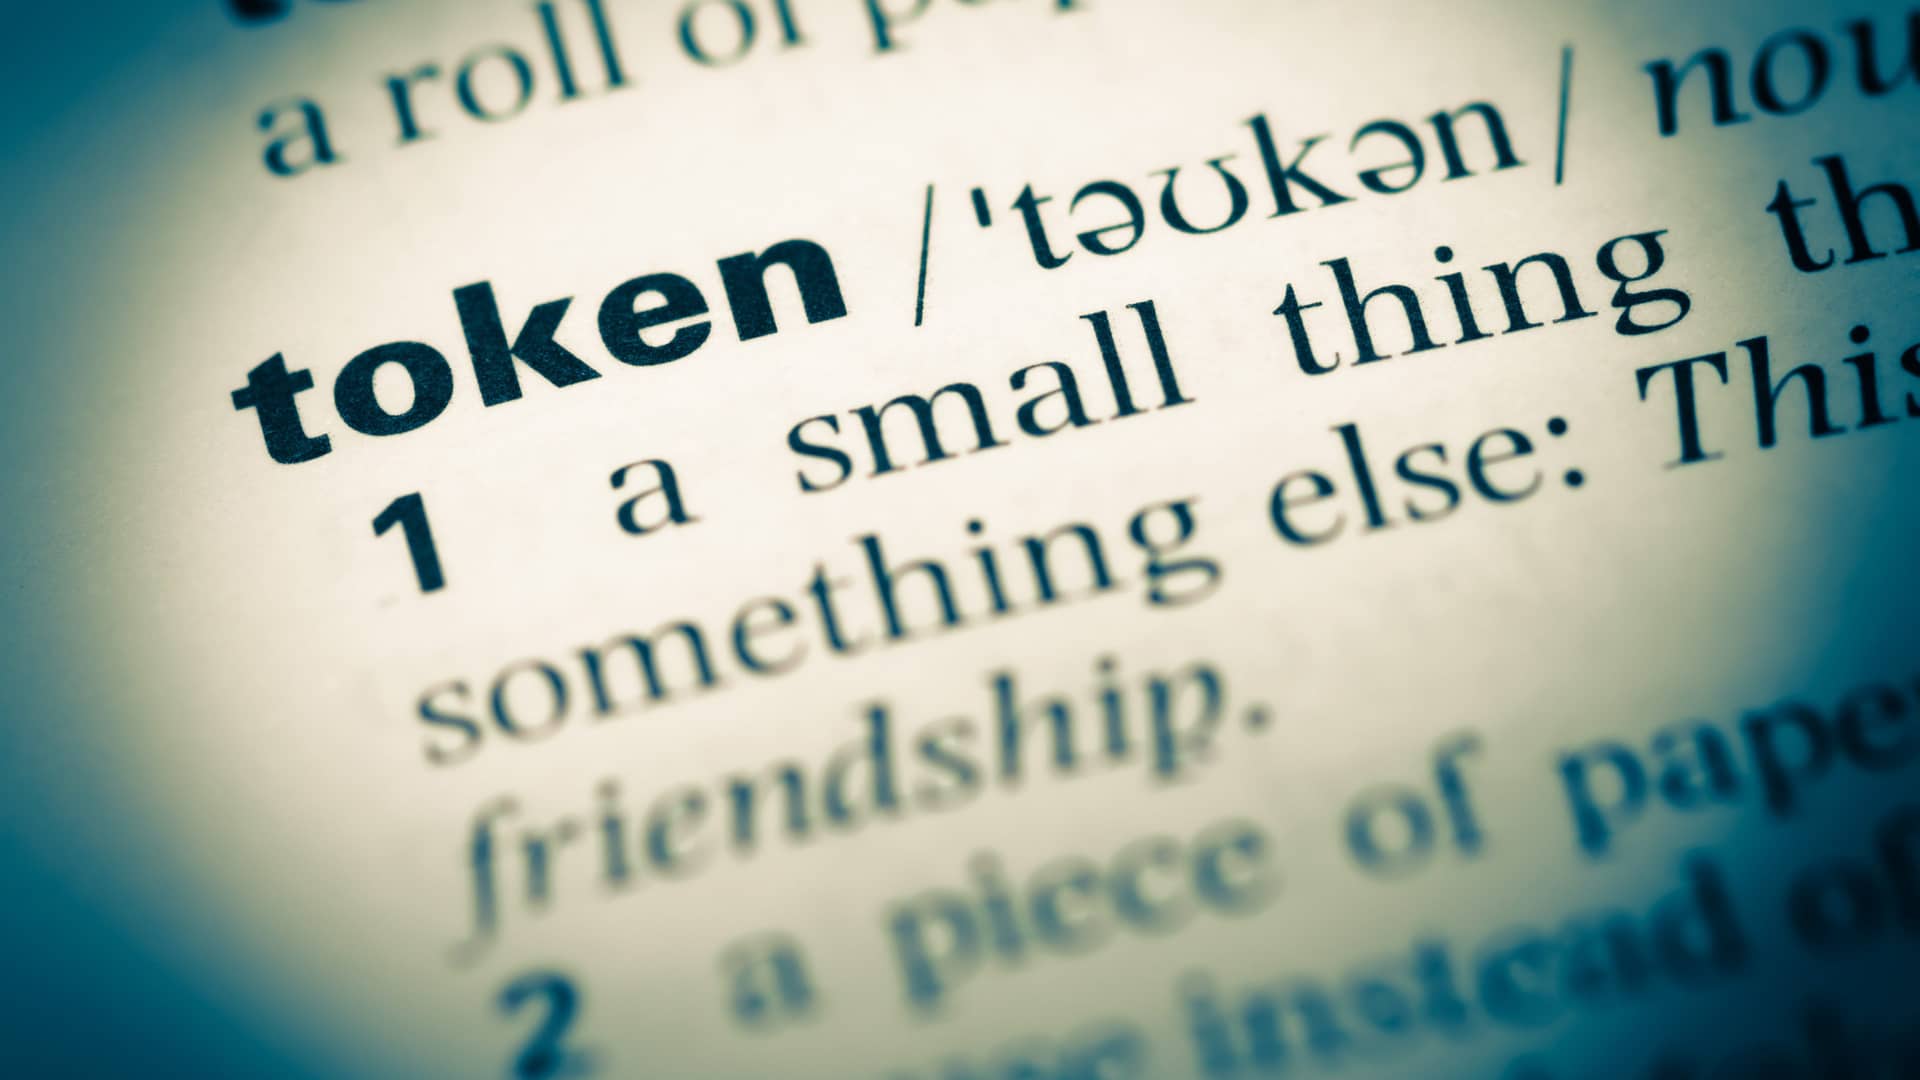 fotografia de la entrada del diccionario ingles de la palabra token que representa las criptomonedas spell token